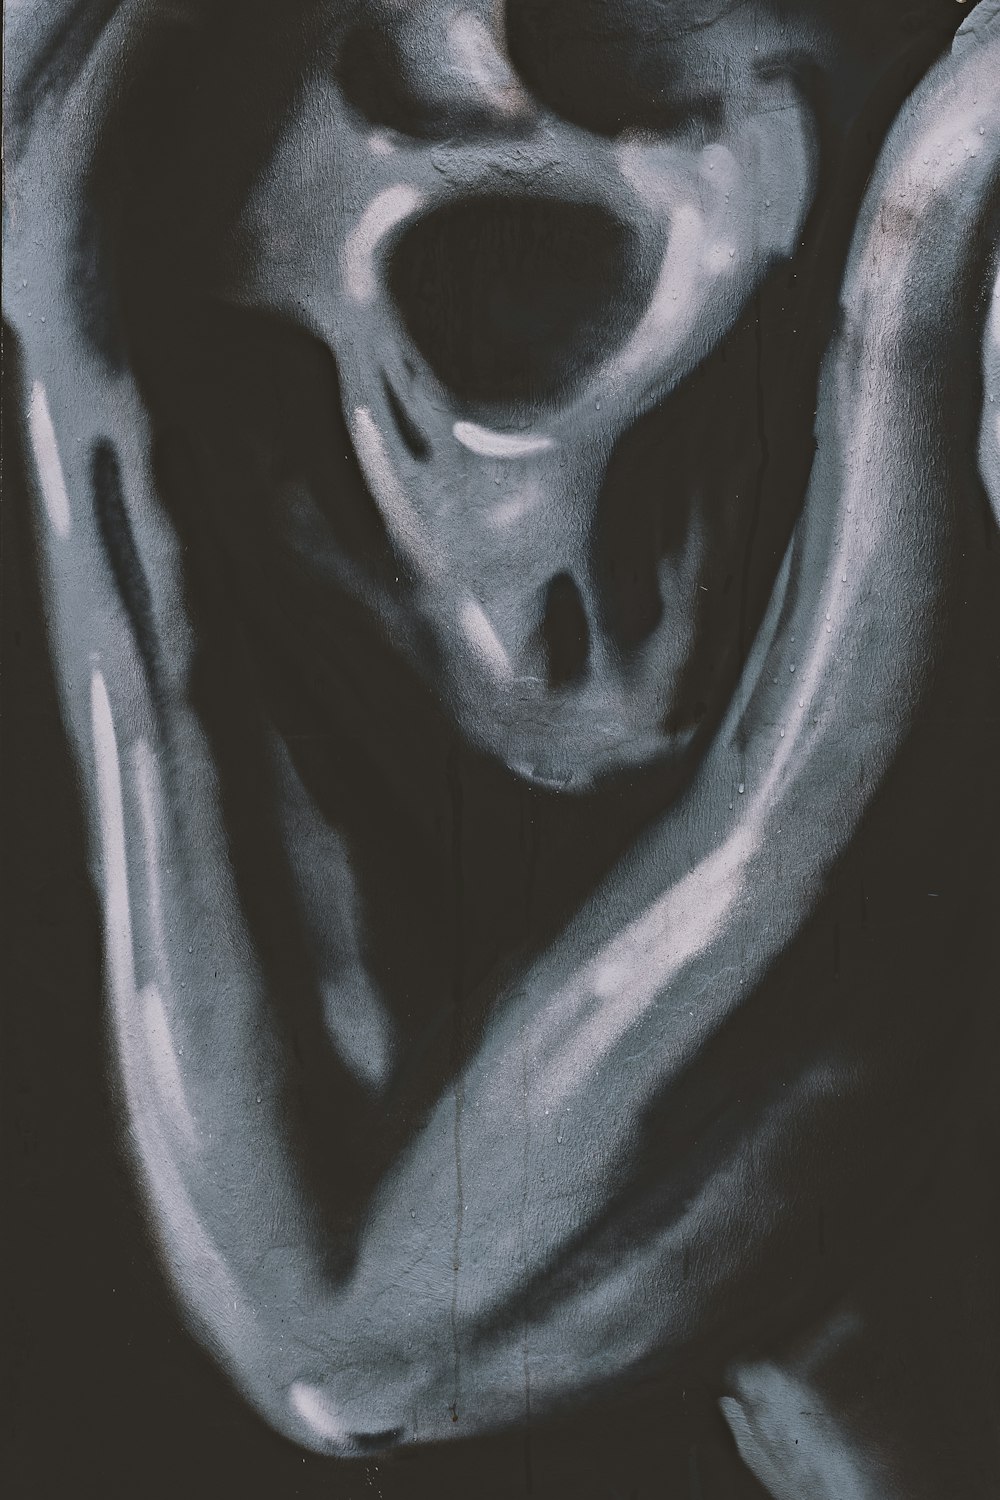 Una foto in bianco e nero di un teschio umano